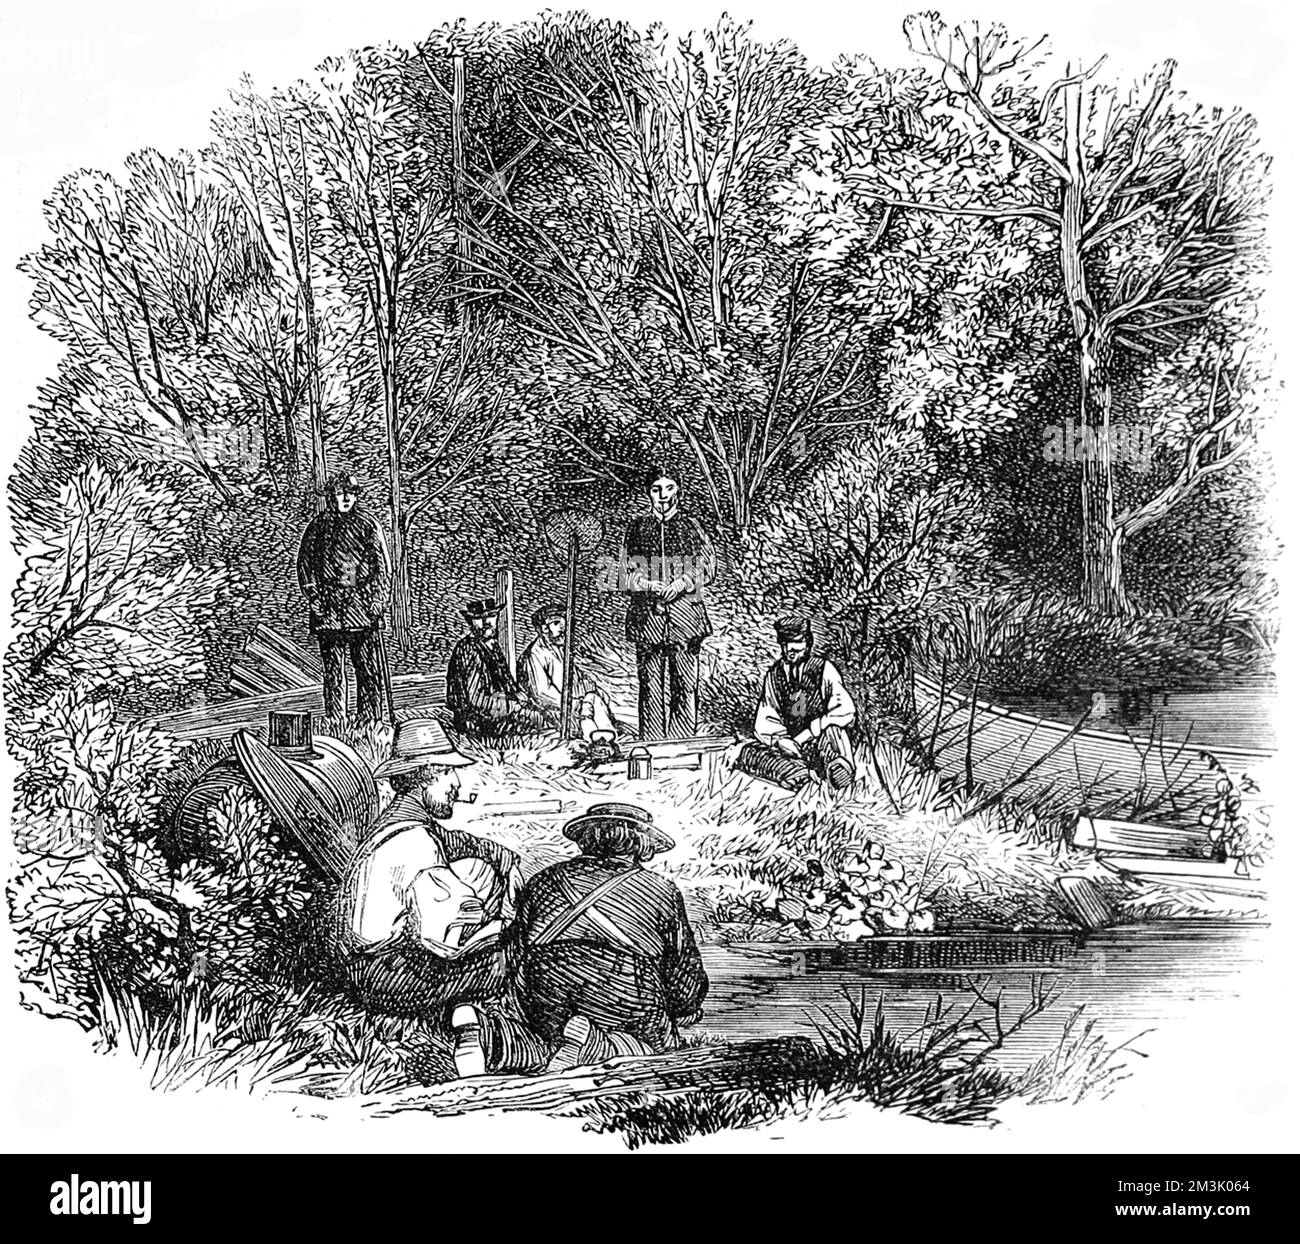 Le chef des Indiens Passamaquoddy divertit ses invités anglais en leur racontant des histoires sur l'histoire de sa tribu dans un camp boisé sur la rive du lac Utopia. Date: 1863 Banque D'Images